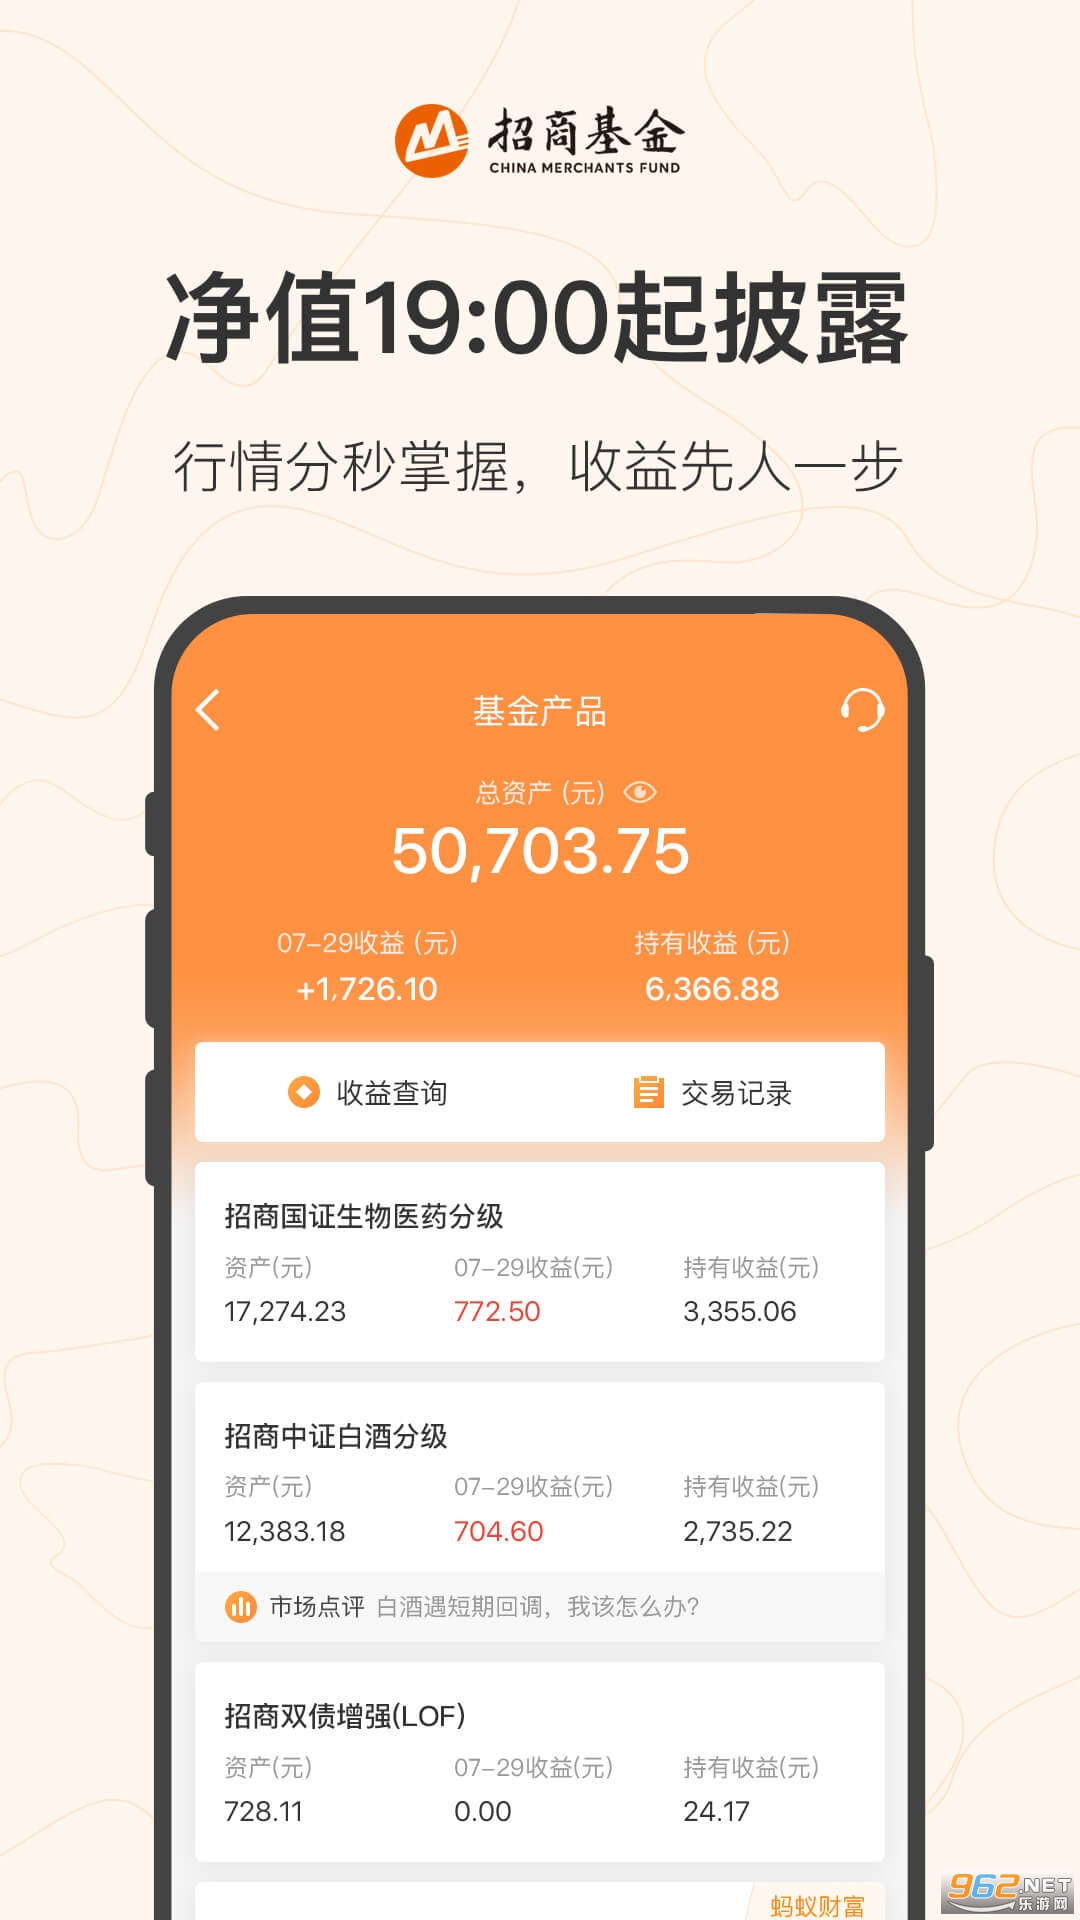 招商基金app v7.14.0 官方版